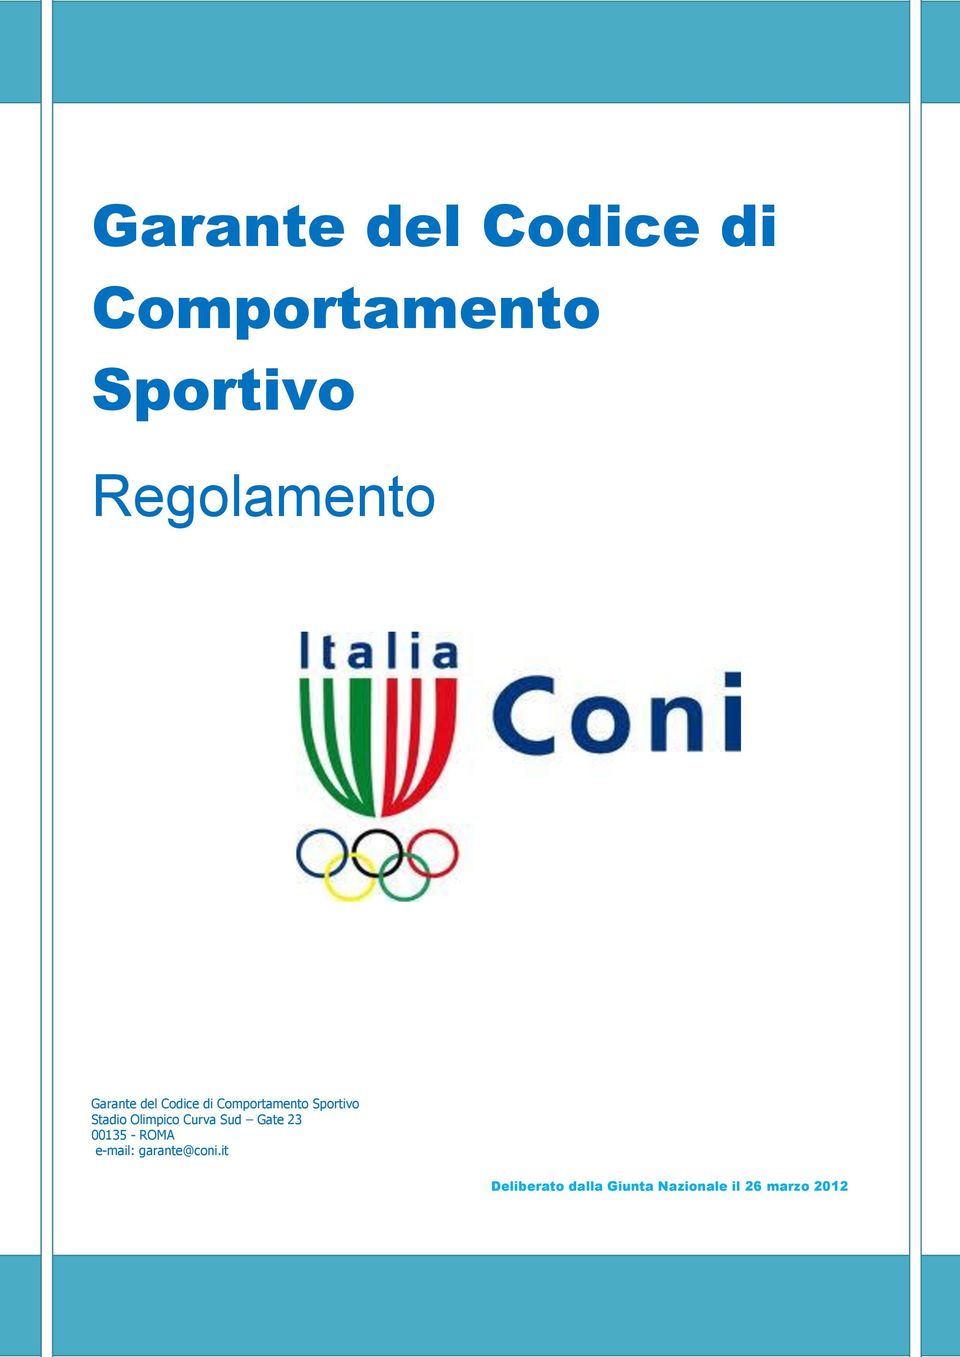 ROMA e-mail: garante@coni.